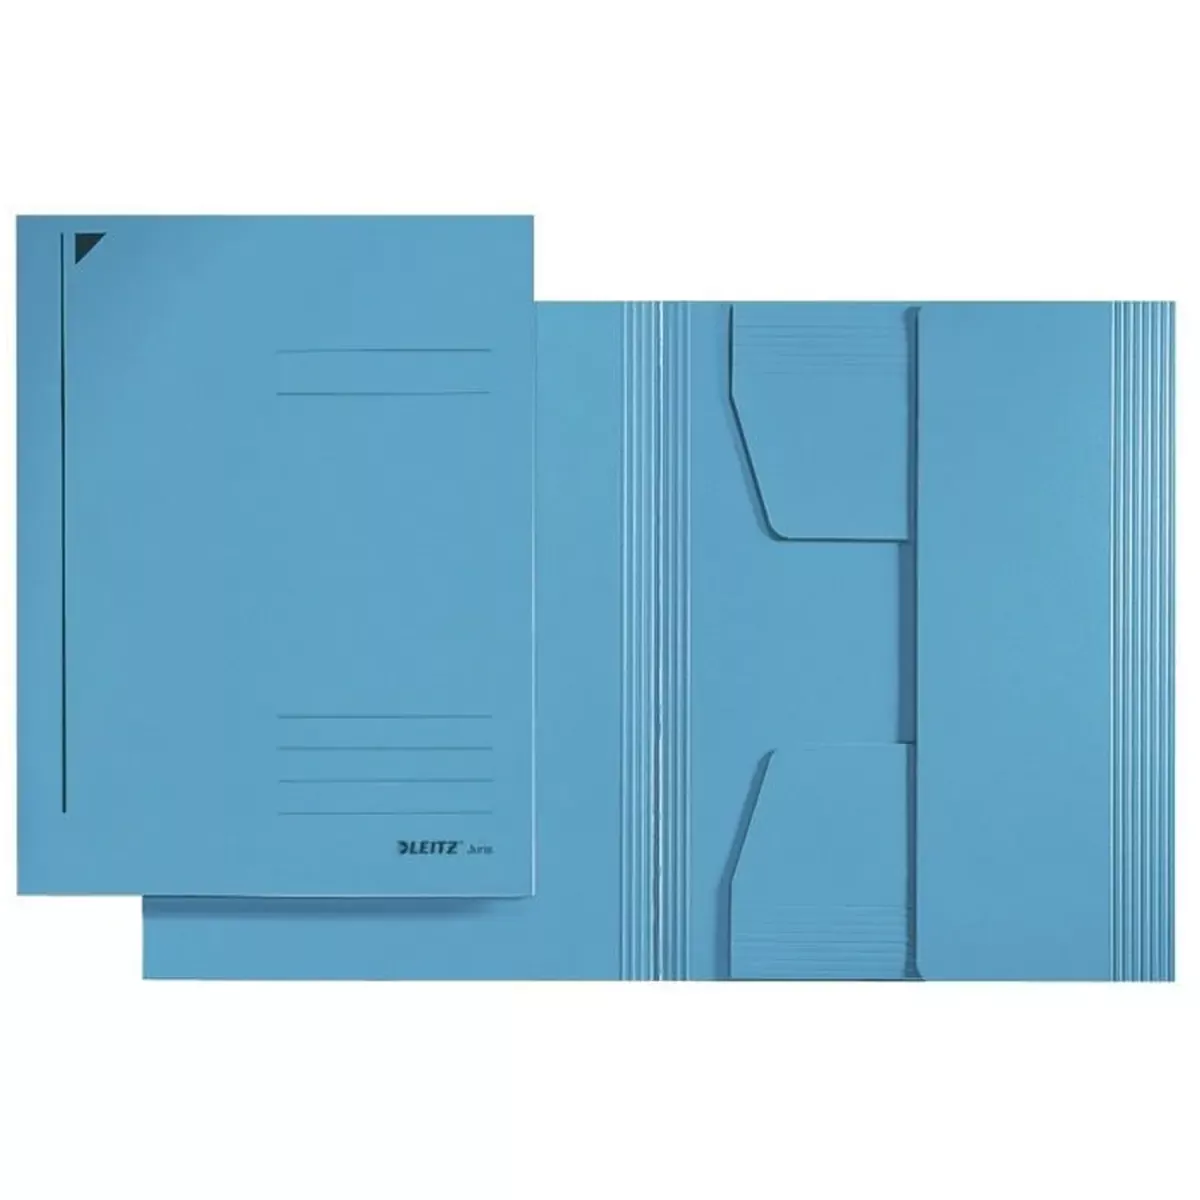 Büromaterial 3925 Jurismappe - A5, Pendarec-Karton 430g, blau für Bürobedarf